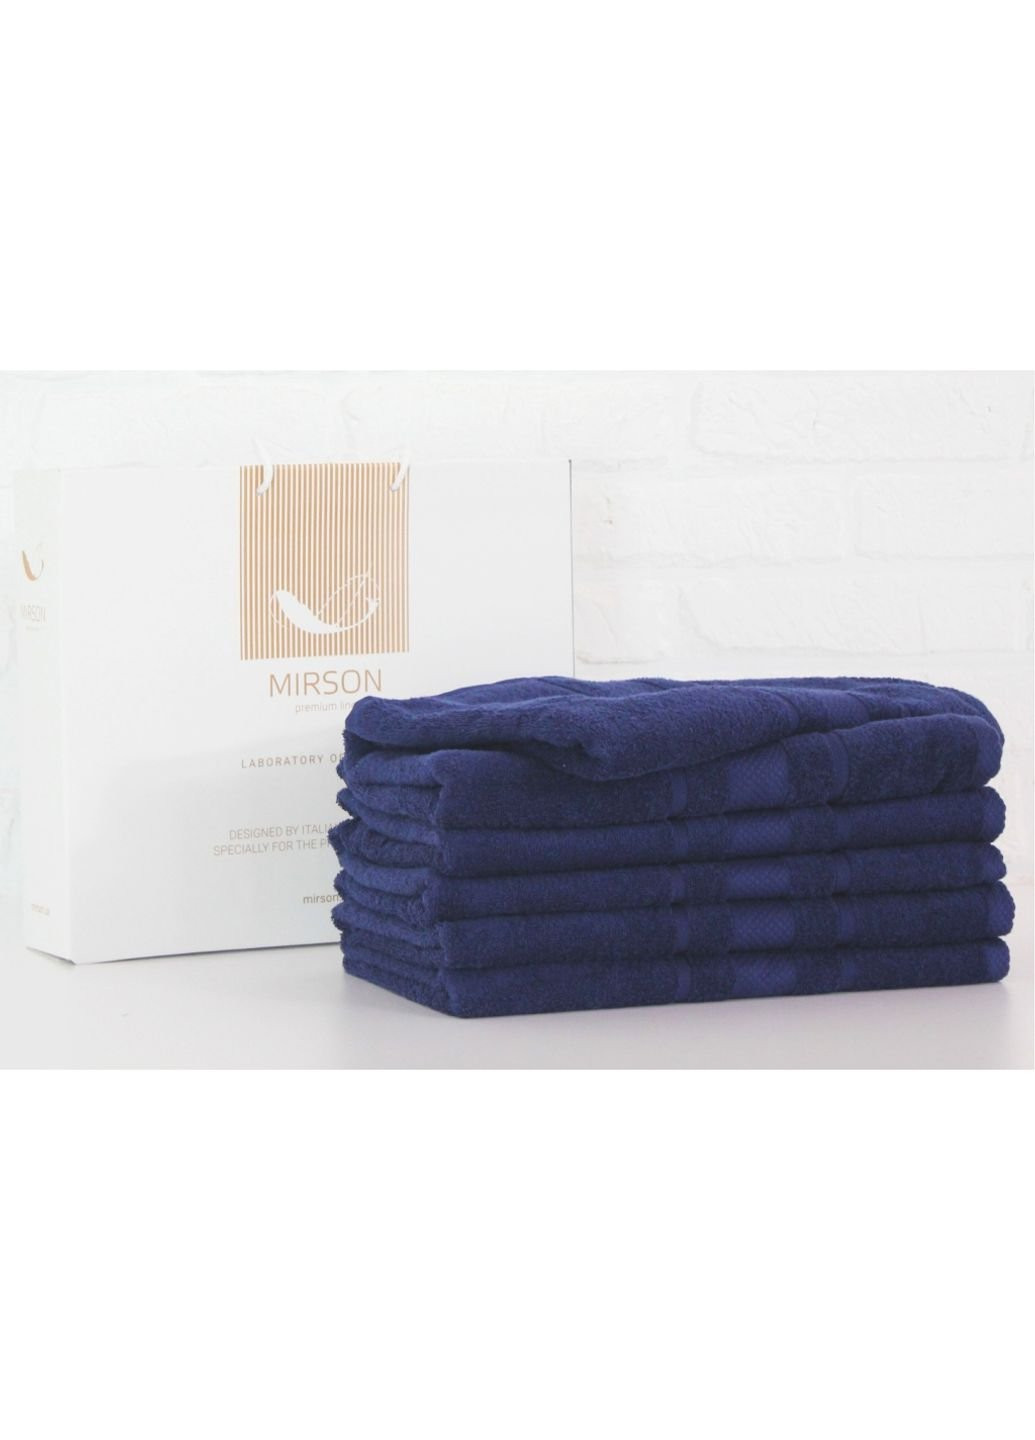 Mirson полотенце набор банных №5076 elite softness kingblue 50х90 6 шт (2200003524000) синий производство - Украина